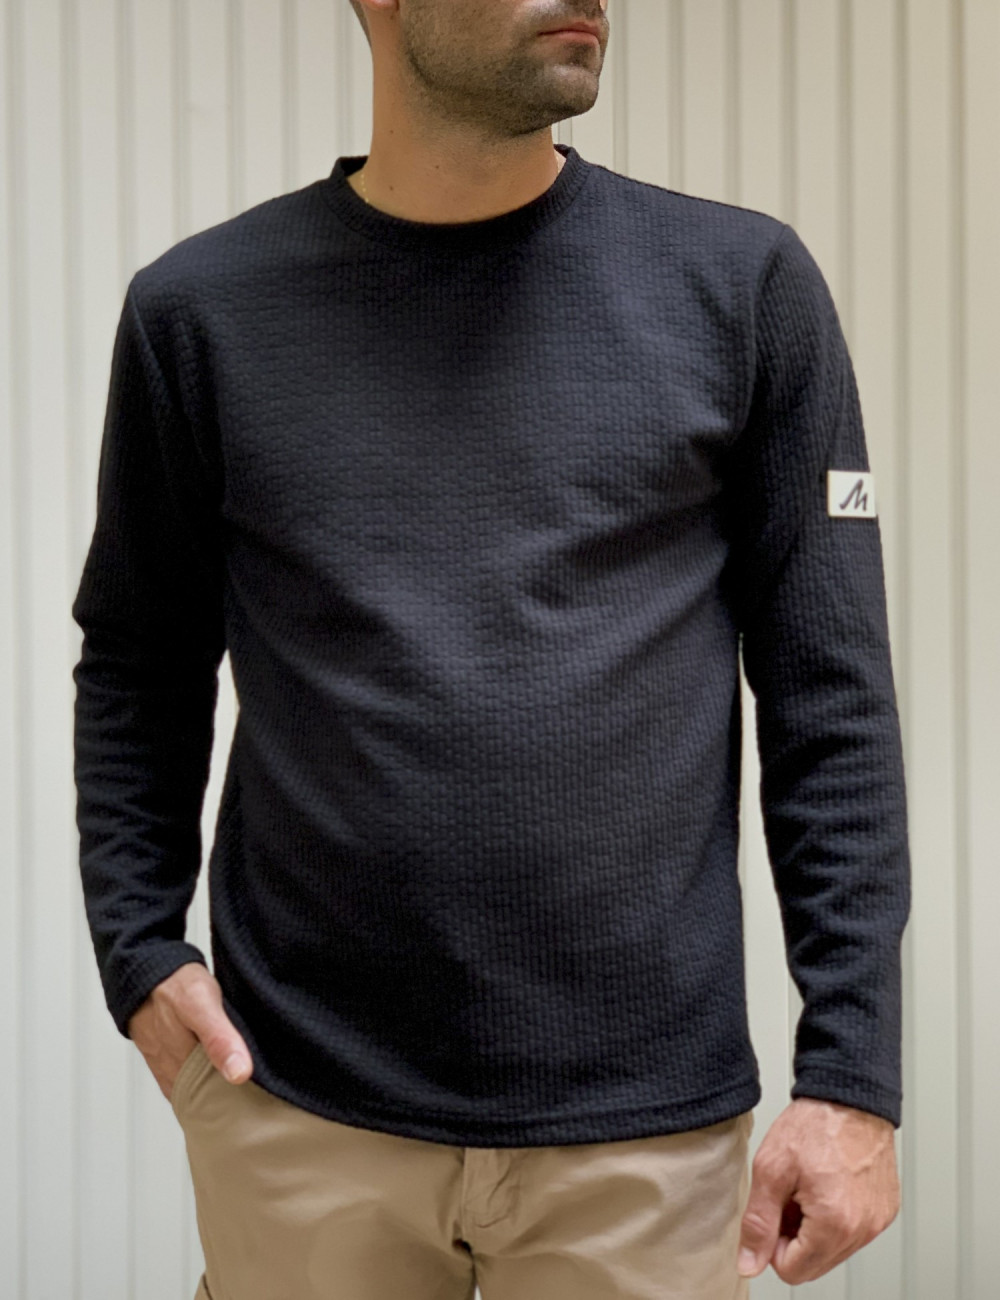 Ανδρική μαύρη μακρυμάνικη μπλούζα με ανάγλυφο σχέδιο MAJE106B